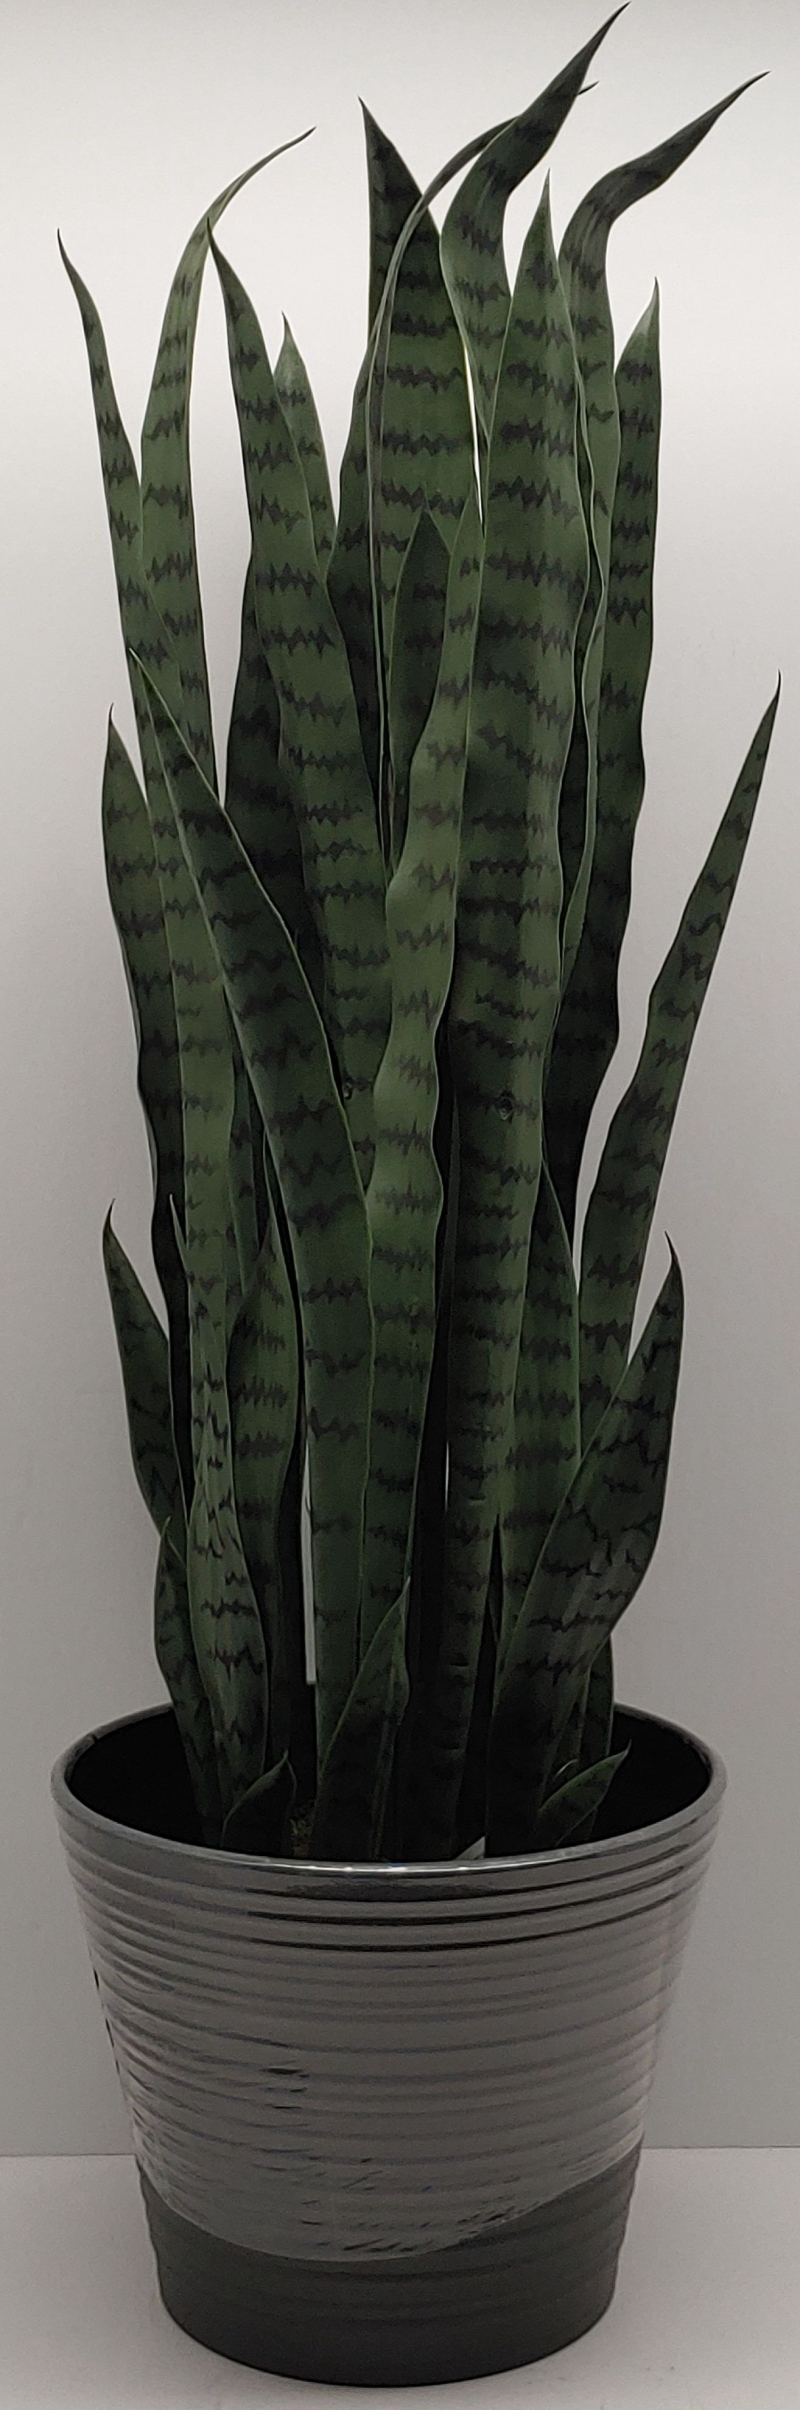 Plant In Vase